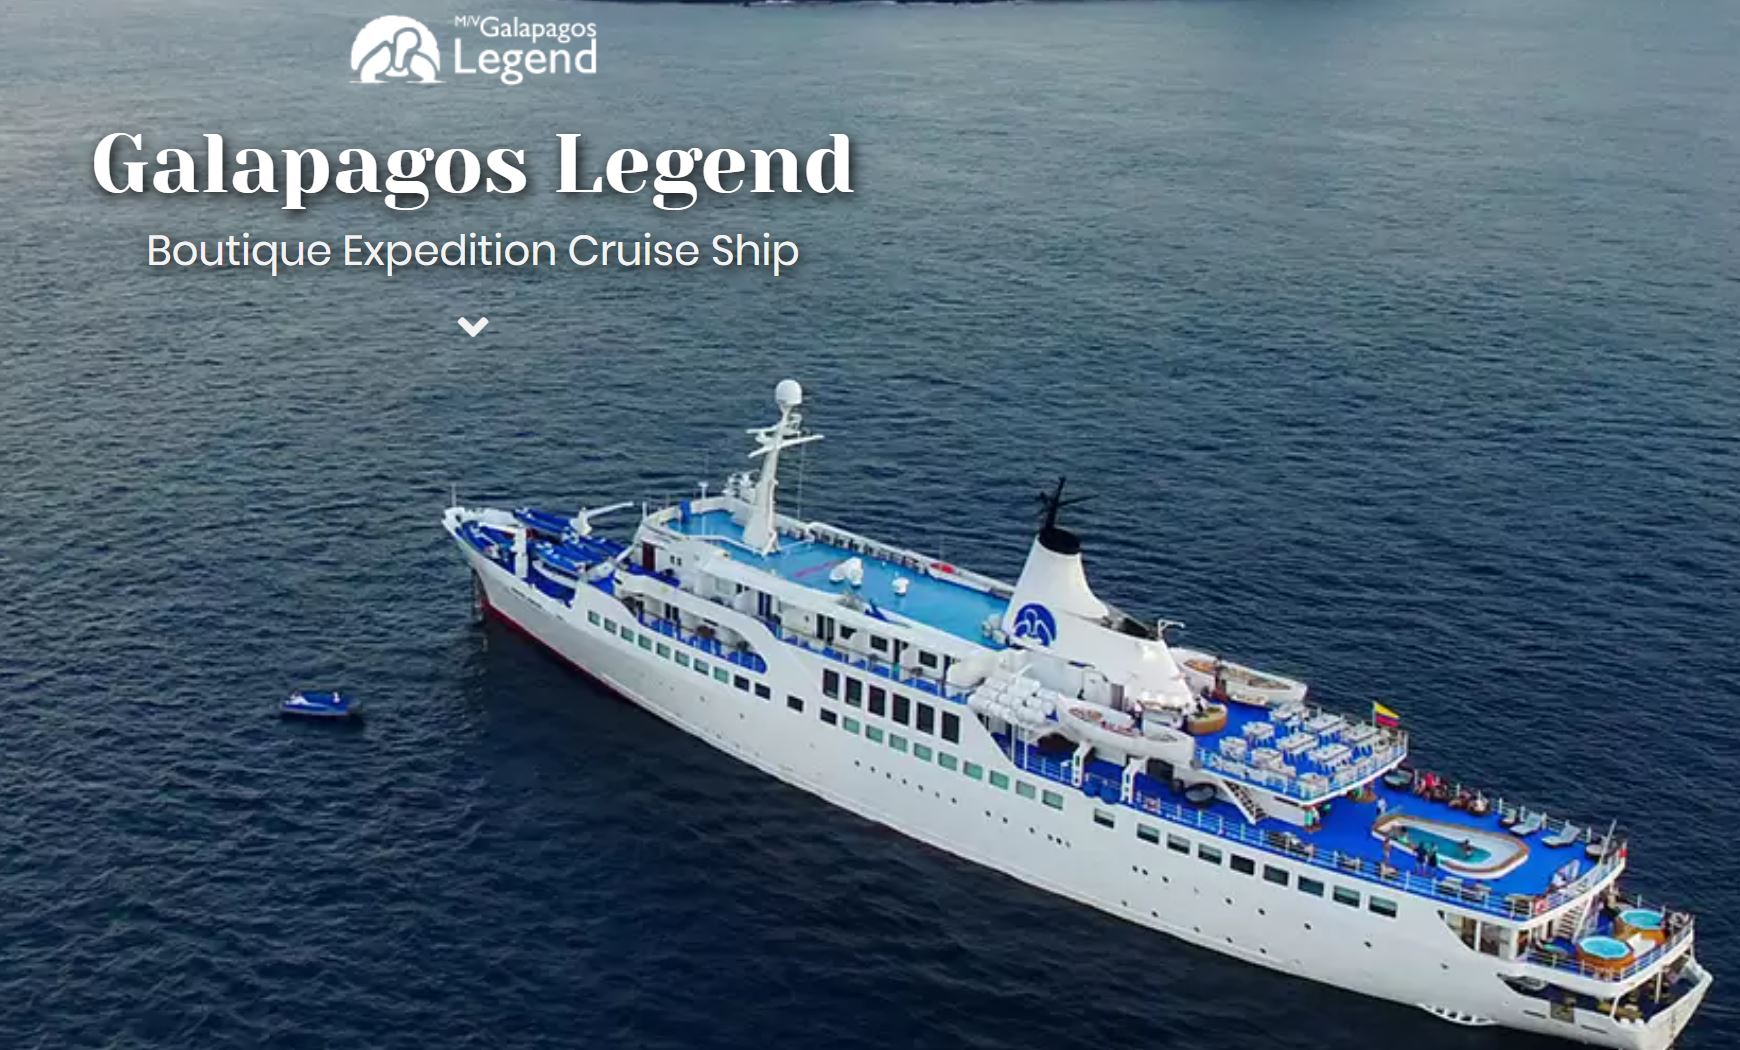 MV Galapagos Legend Boutique Expedition Cruise Schiff, i.d.R. mit deutschsprachigem Guide: Galapagos Legend Boutique Expedition Schiff 8 Tage/7 Nächte Kreuzfahrt